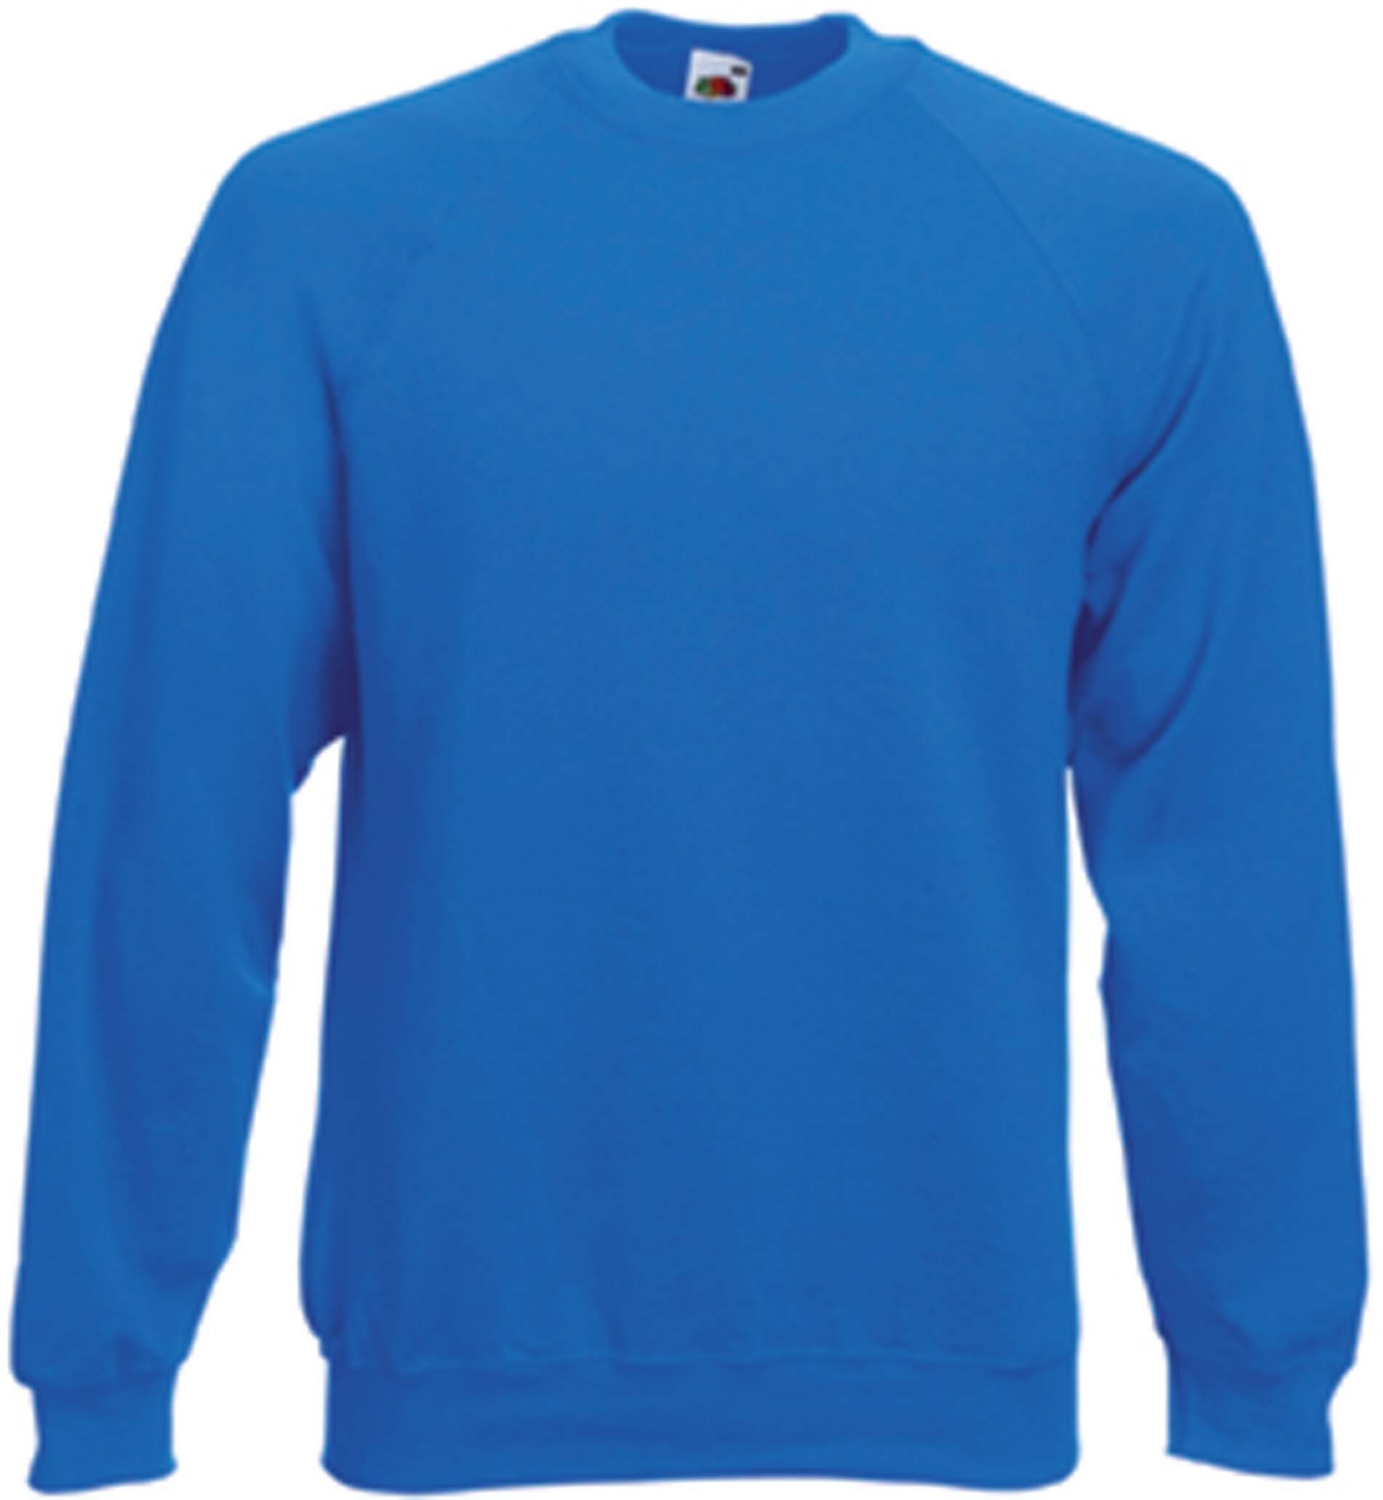  Sweat-shirt SC4C - Bleu royal 